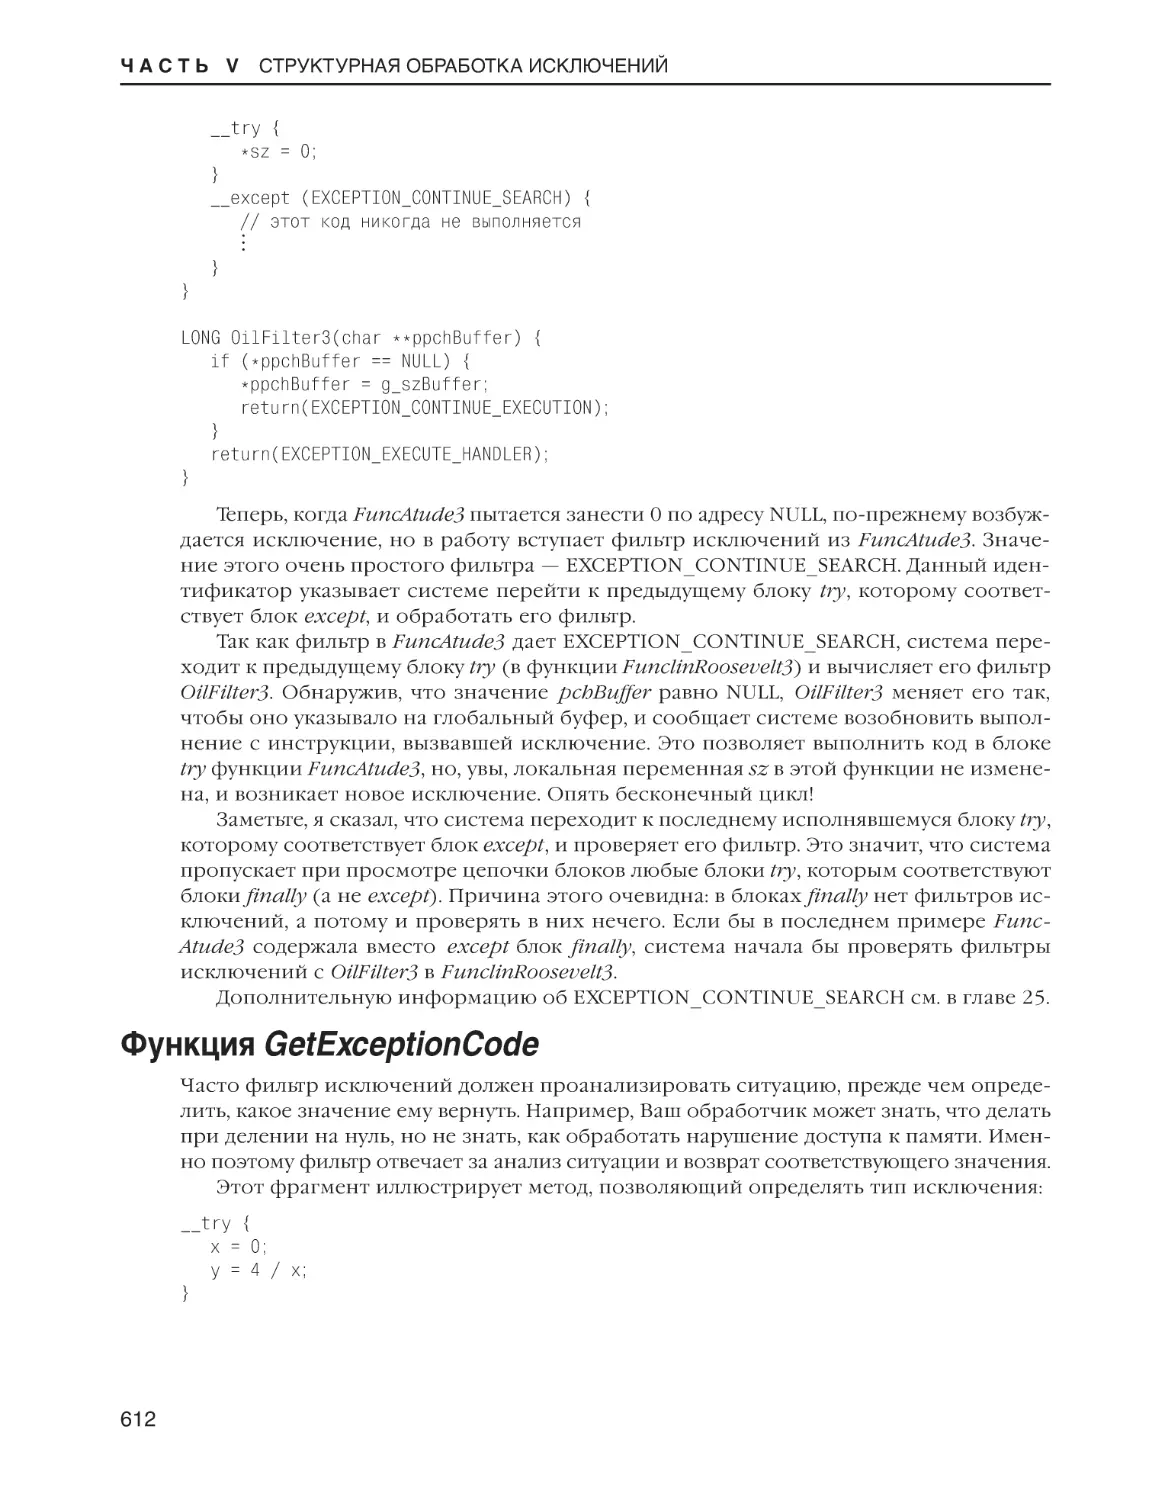 Функция GetExceptionCode